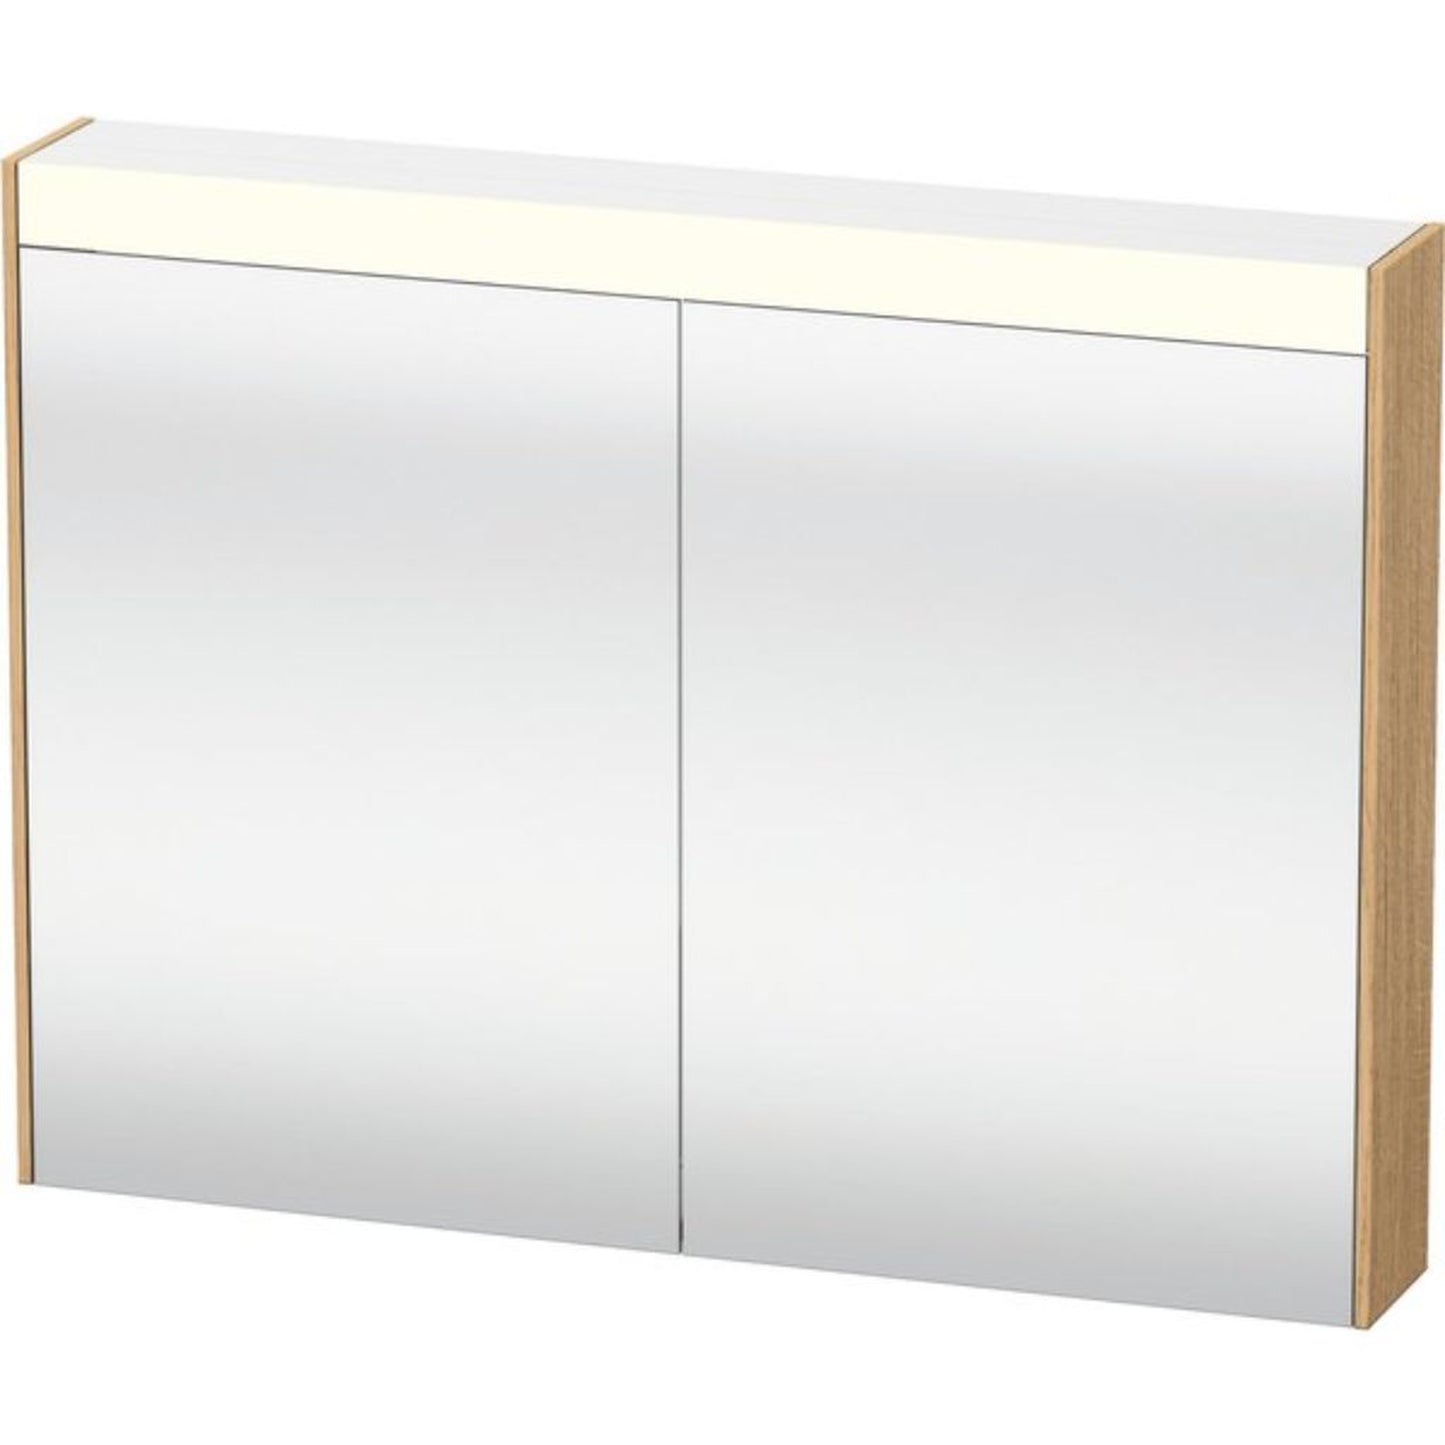 Duravit Brioso 32" x 30" x 6" Mirror Cabinet With Lighting Natural Oak